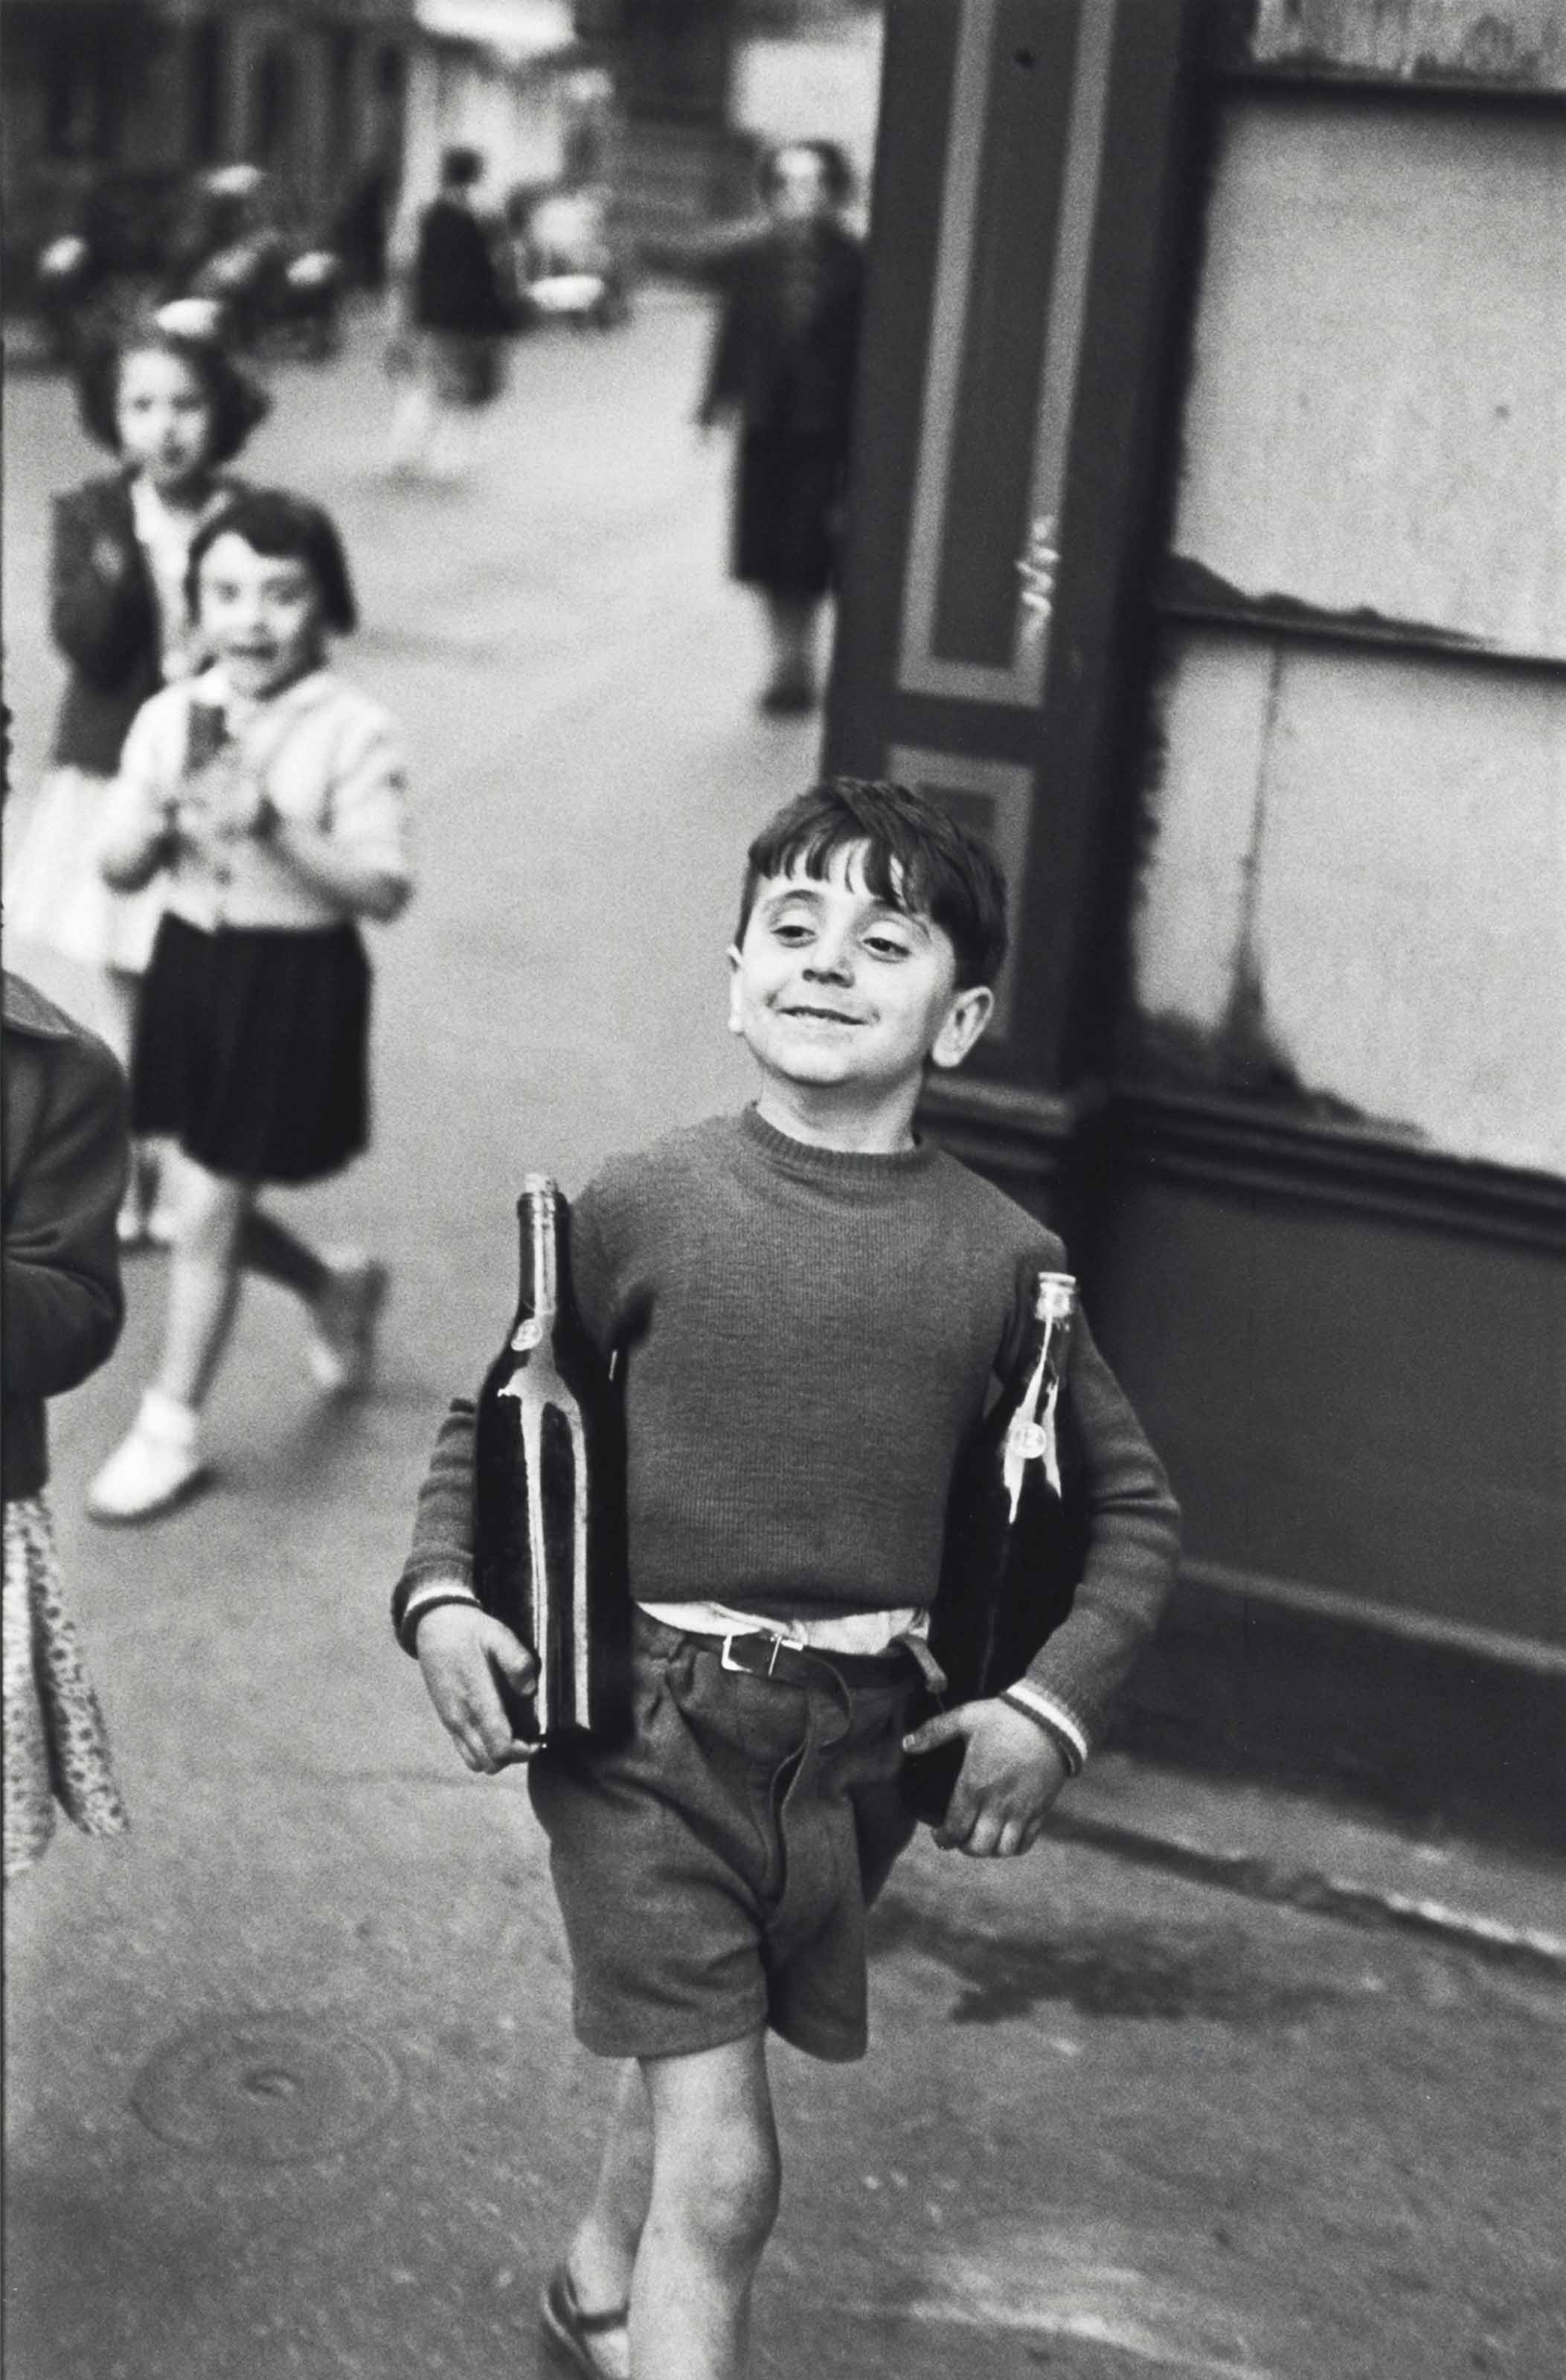 Улица Муфтар, Париж, 1954. Фотограф Анри Картье-Брессон